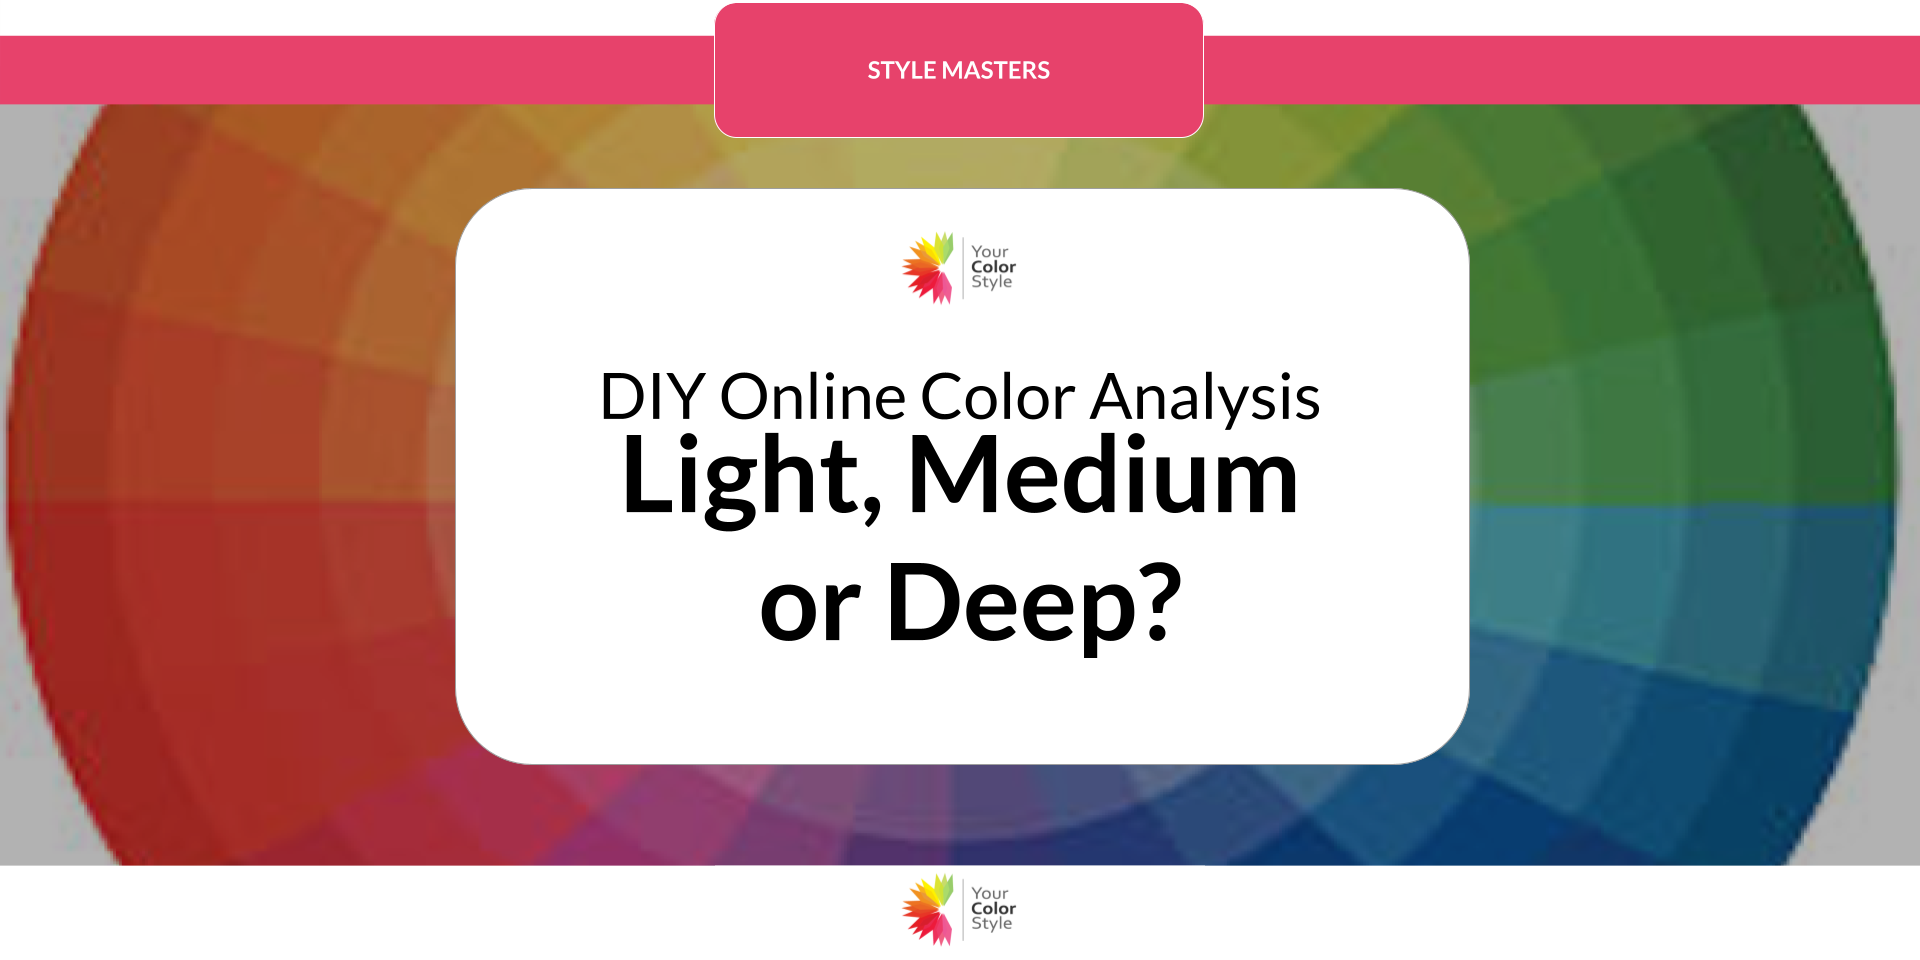 Determine Your Value - Light, Medium or Deep